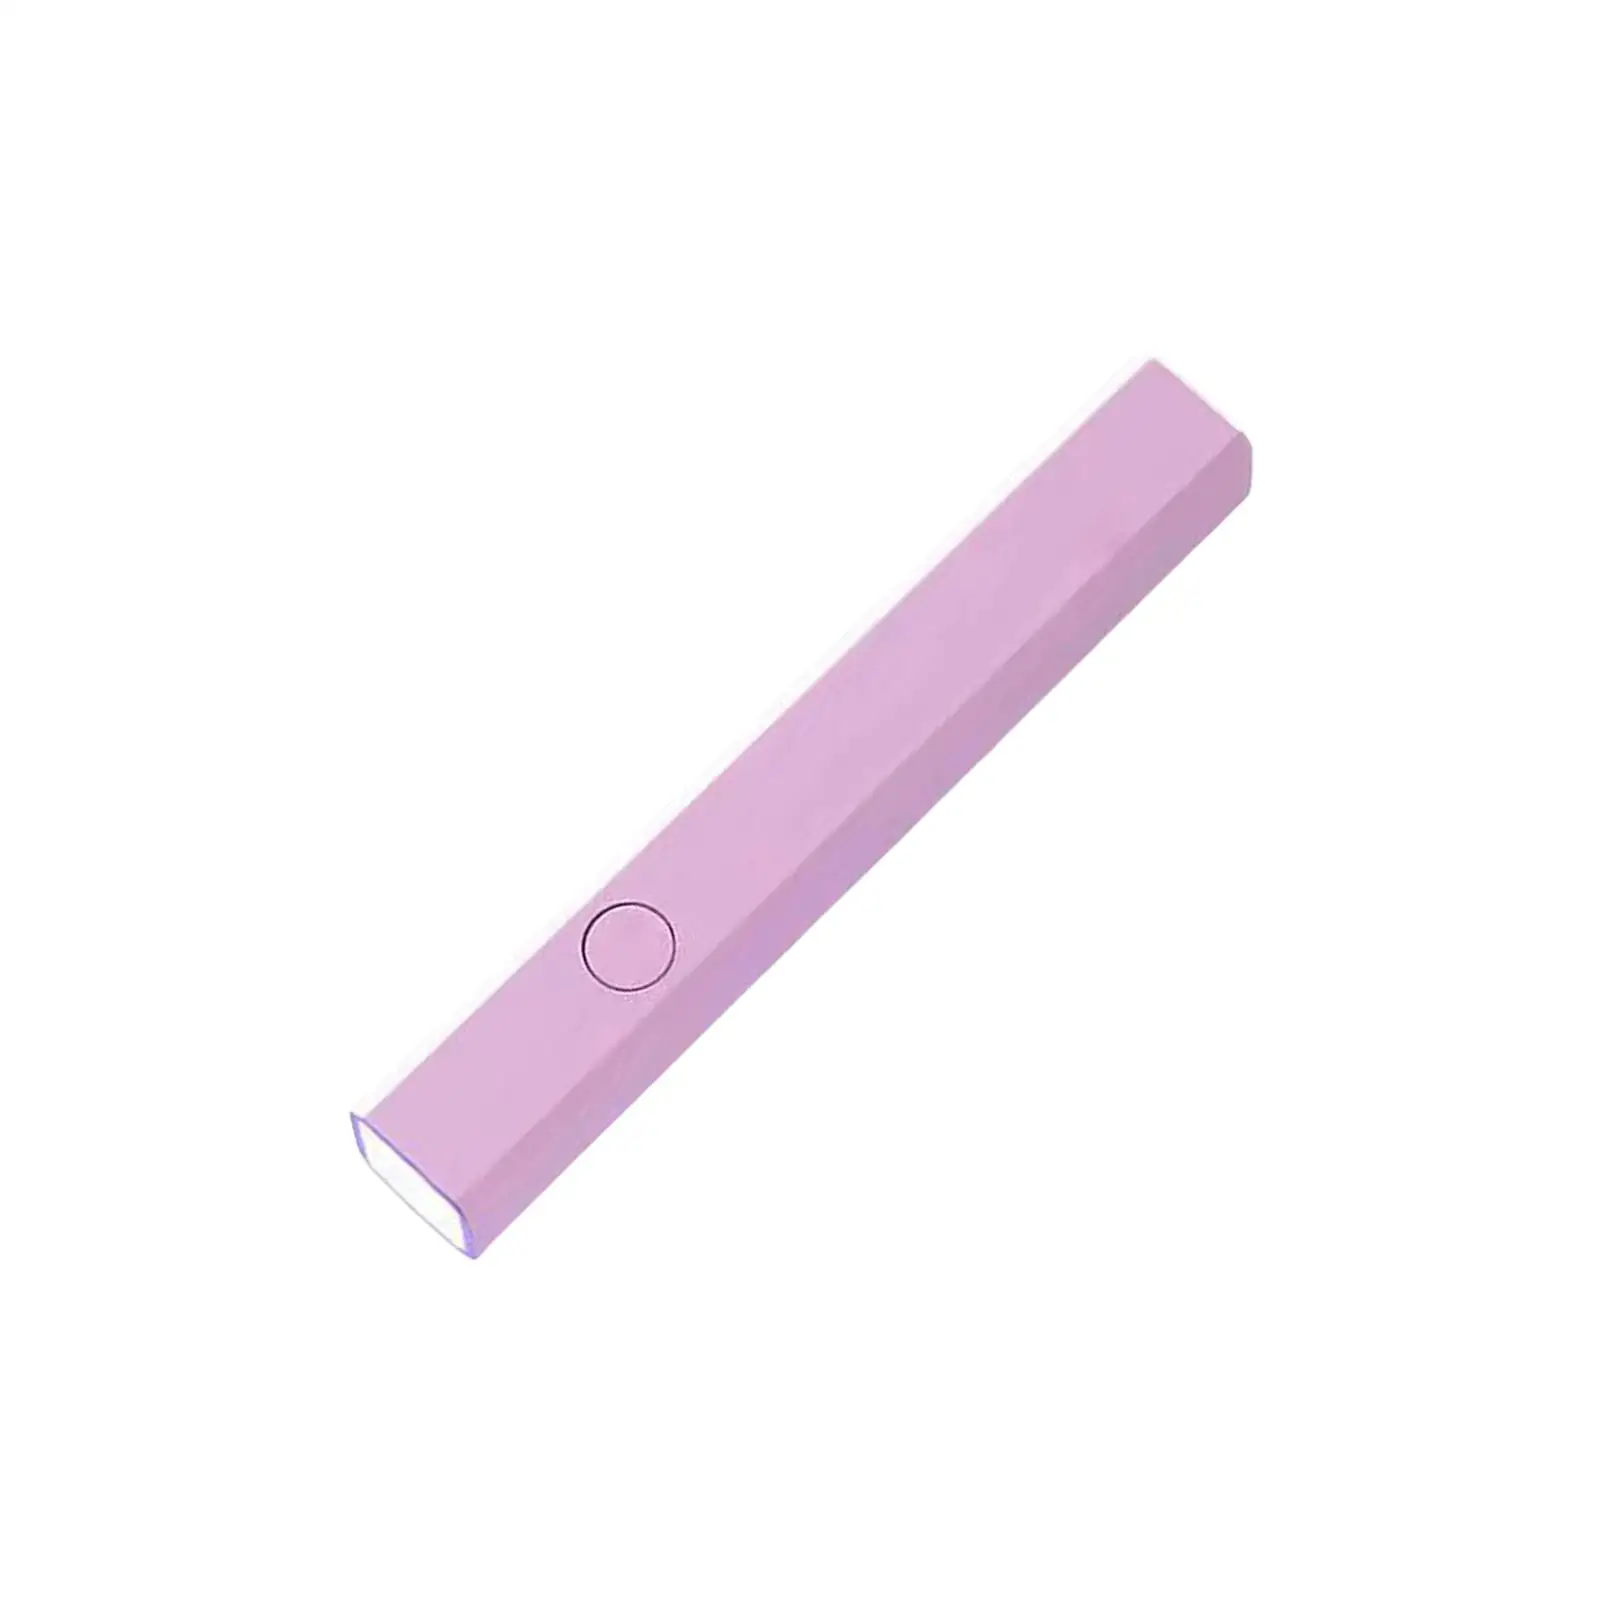 Handheld Nail Lamp Flashlight Fast Curing USB Nail Salon Manicure Tool Small Nail Polish Curing Lamp UV Nail Light Nail Dryer